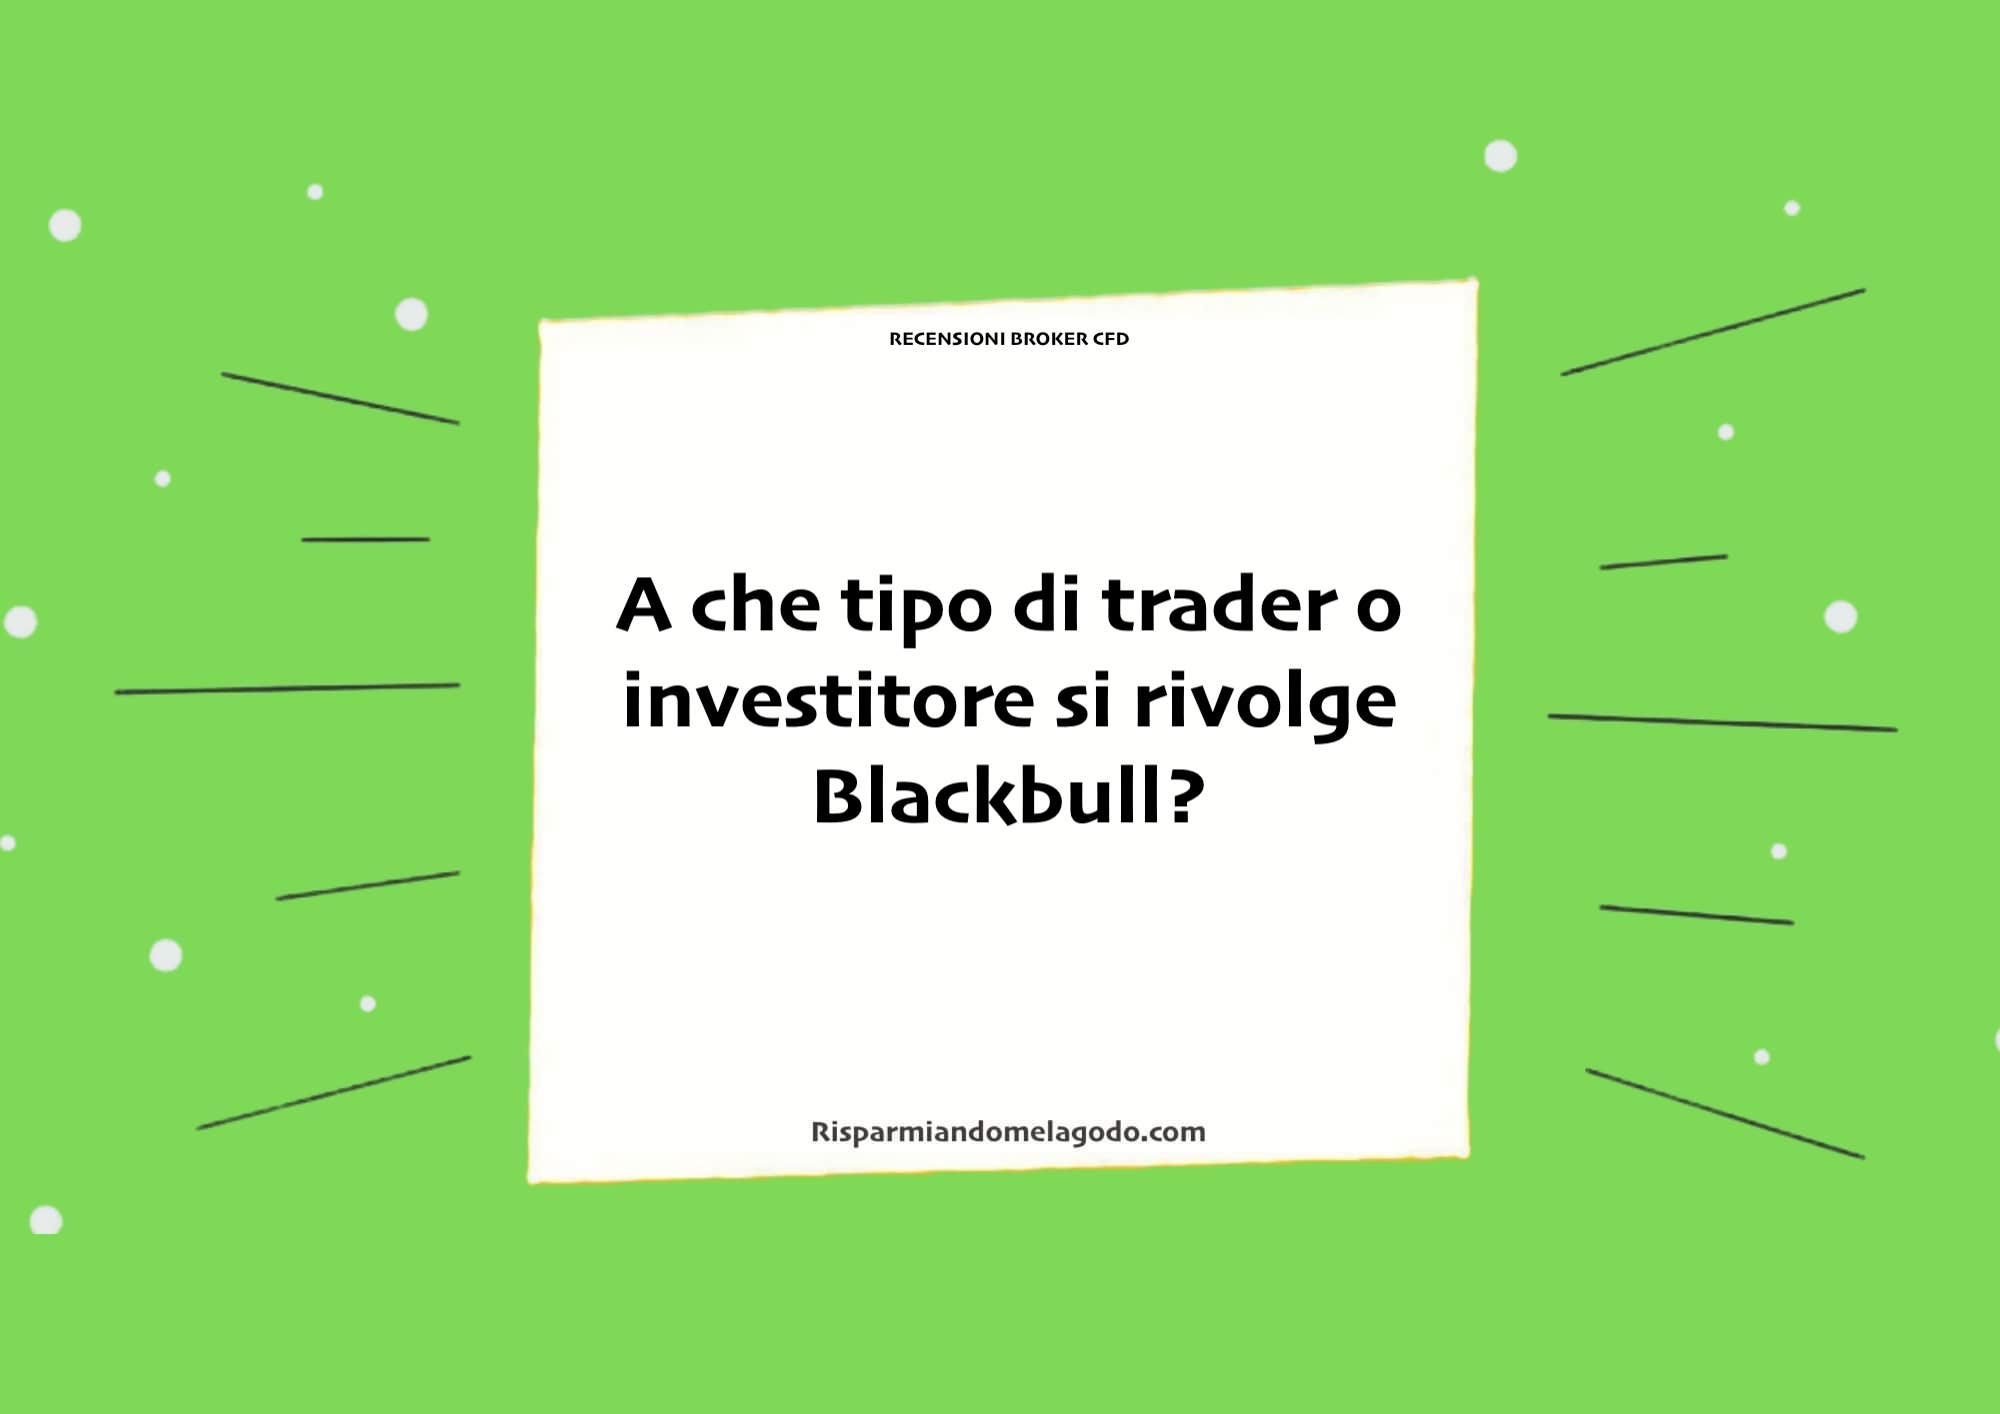 A che tipo di trader o investitore si rivolge Blackbull?